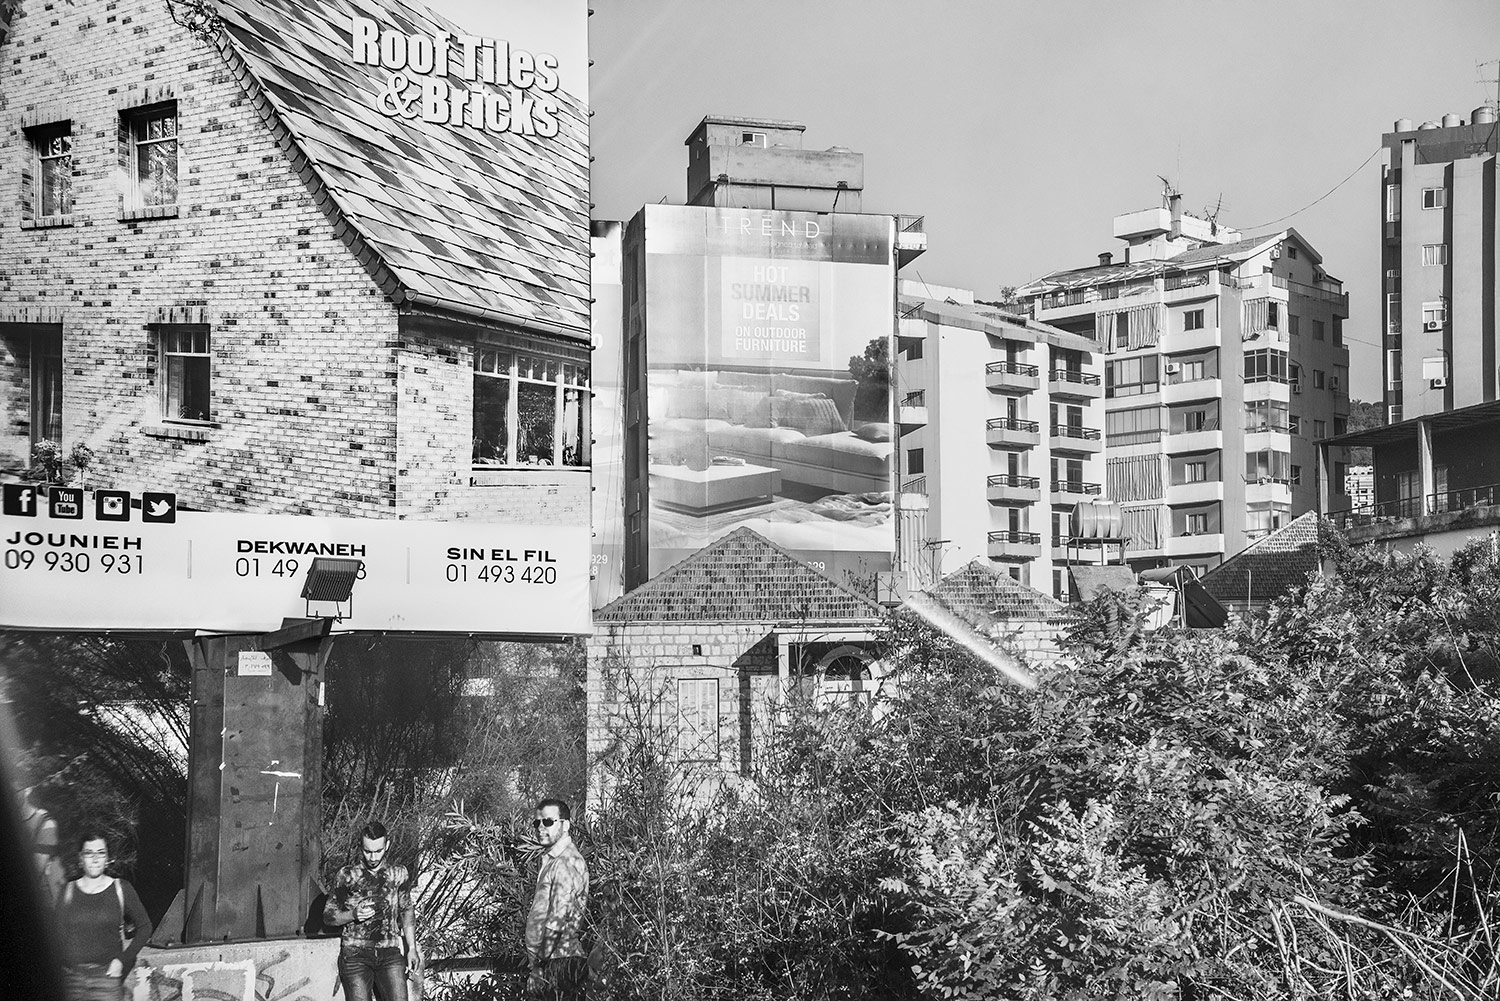   Roof Tiles/Bus Stop.  Beirut, Lebanon, 2018  Archival Fiber Inkjet Print   16 x 24 inches 